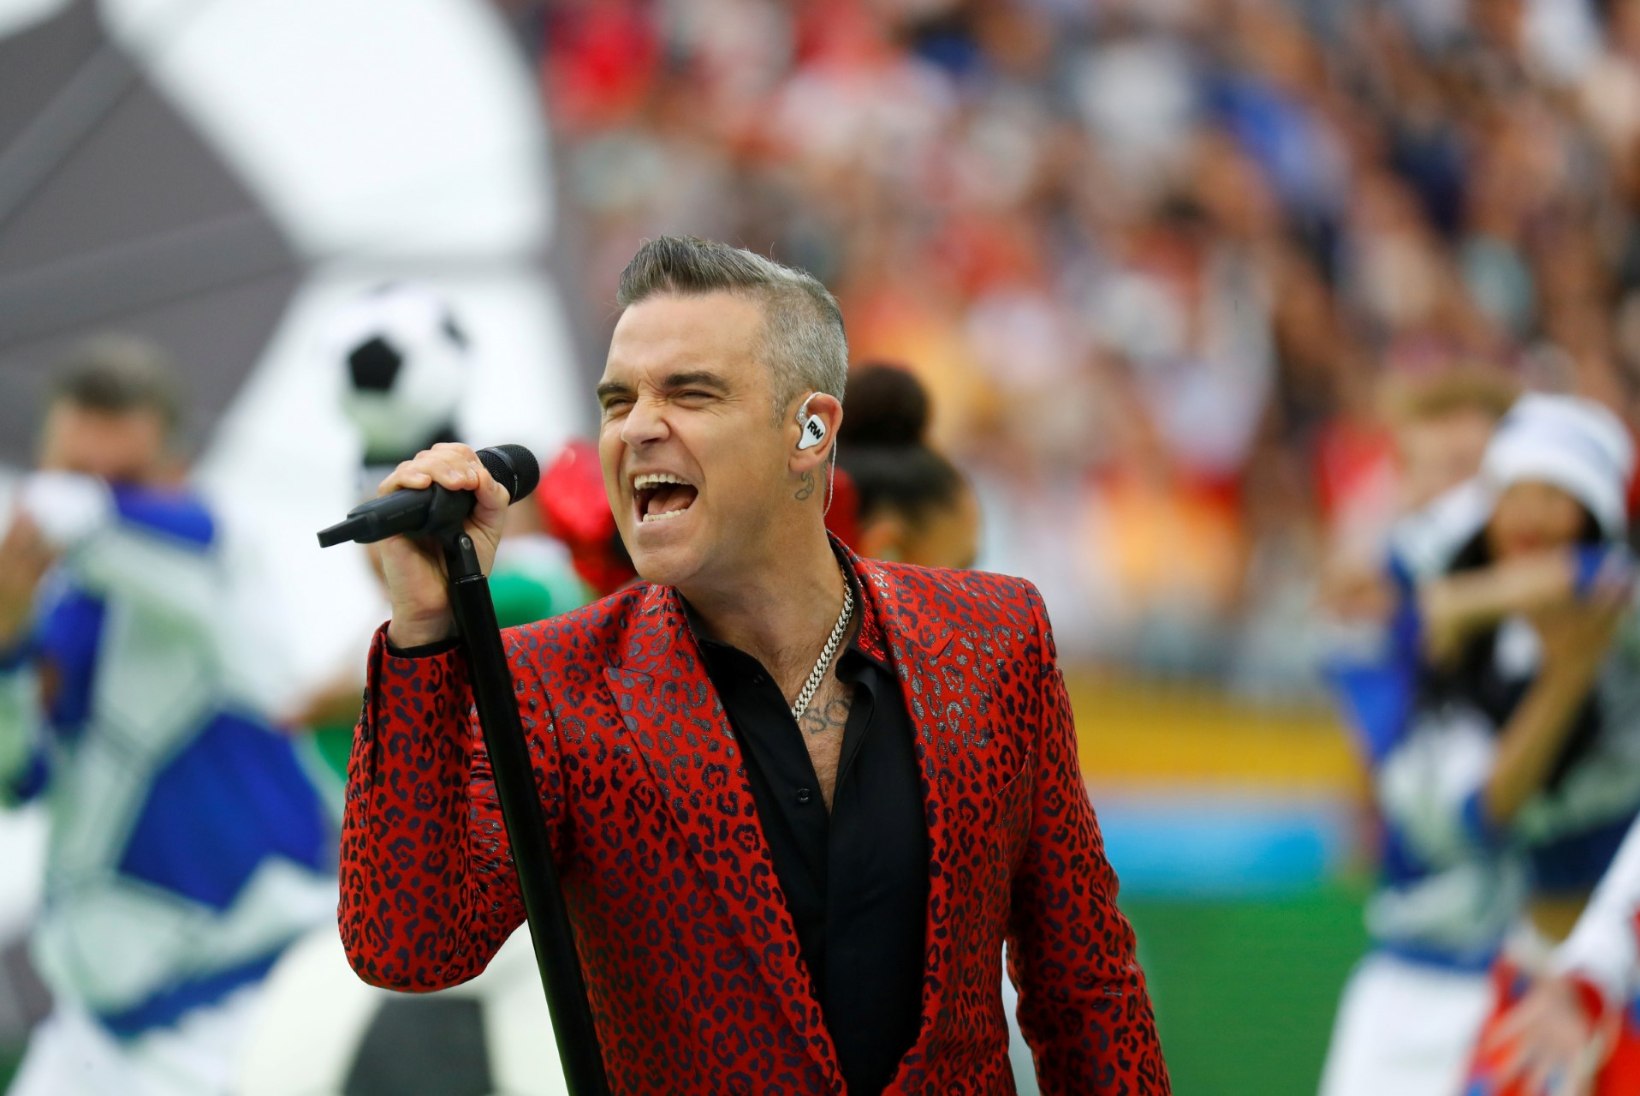 ÕUDUS KUUBIS: Robbie Williamsil ja ta naisel ähvardati pea maha raiuda